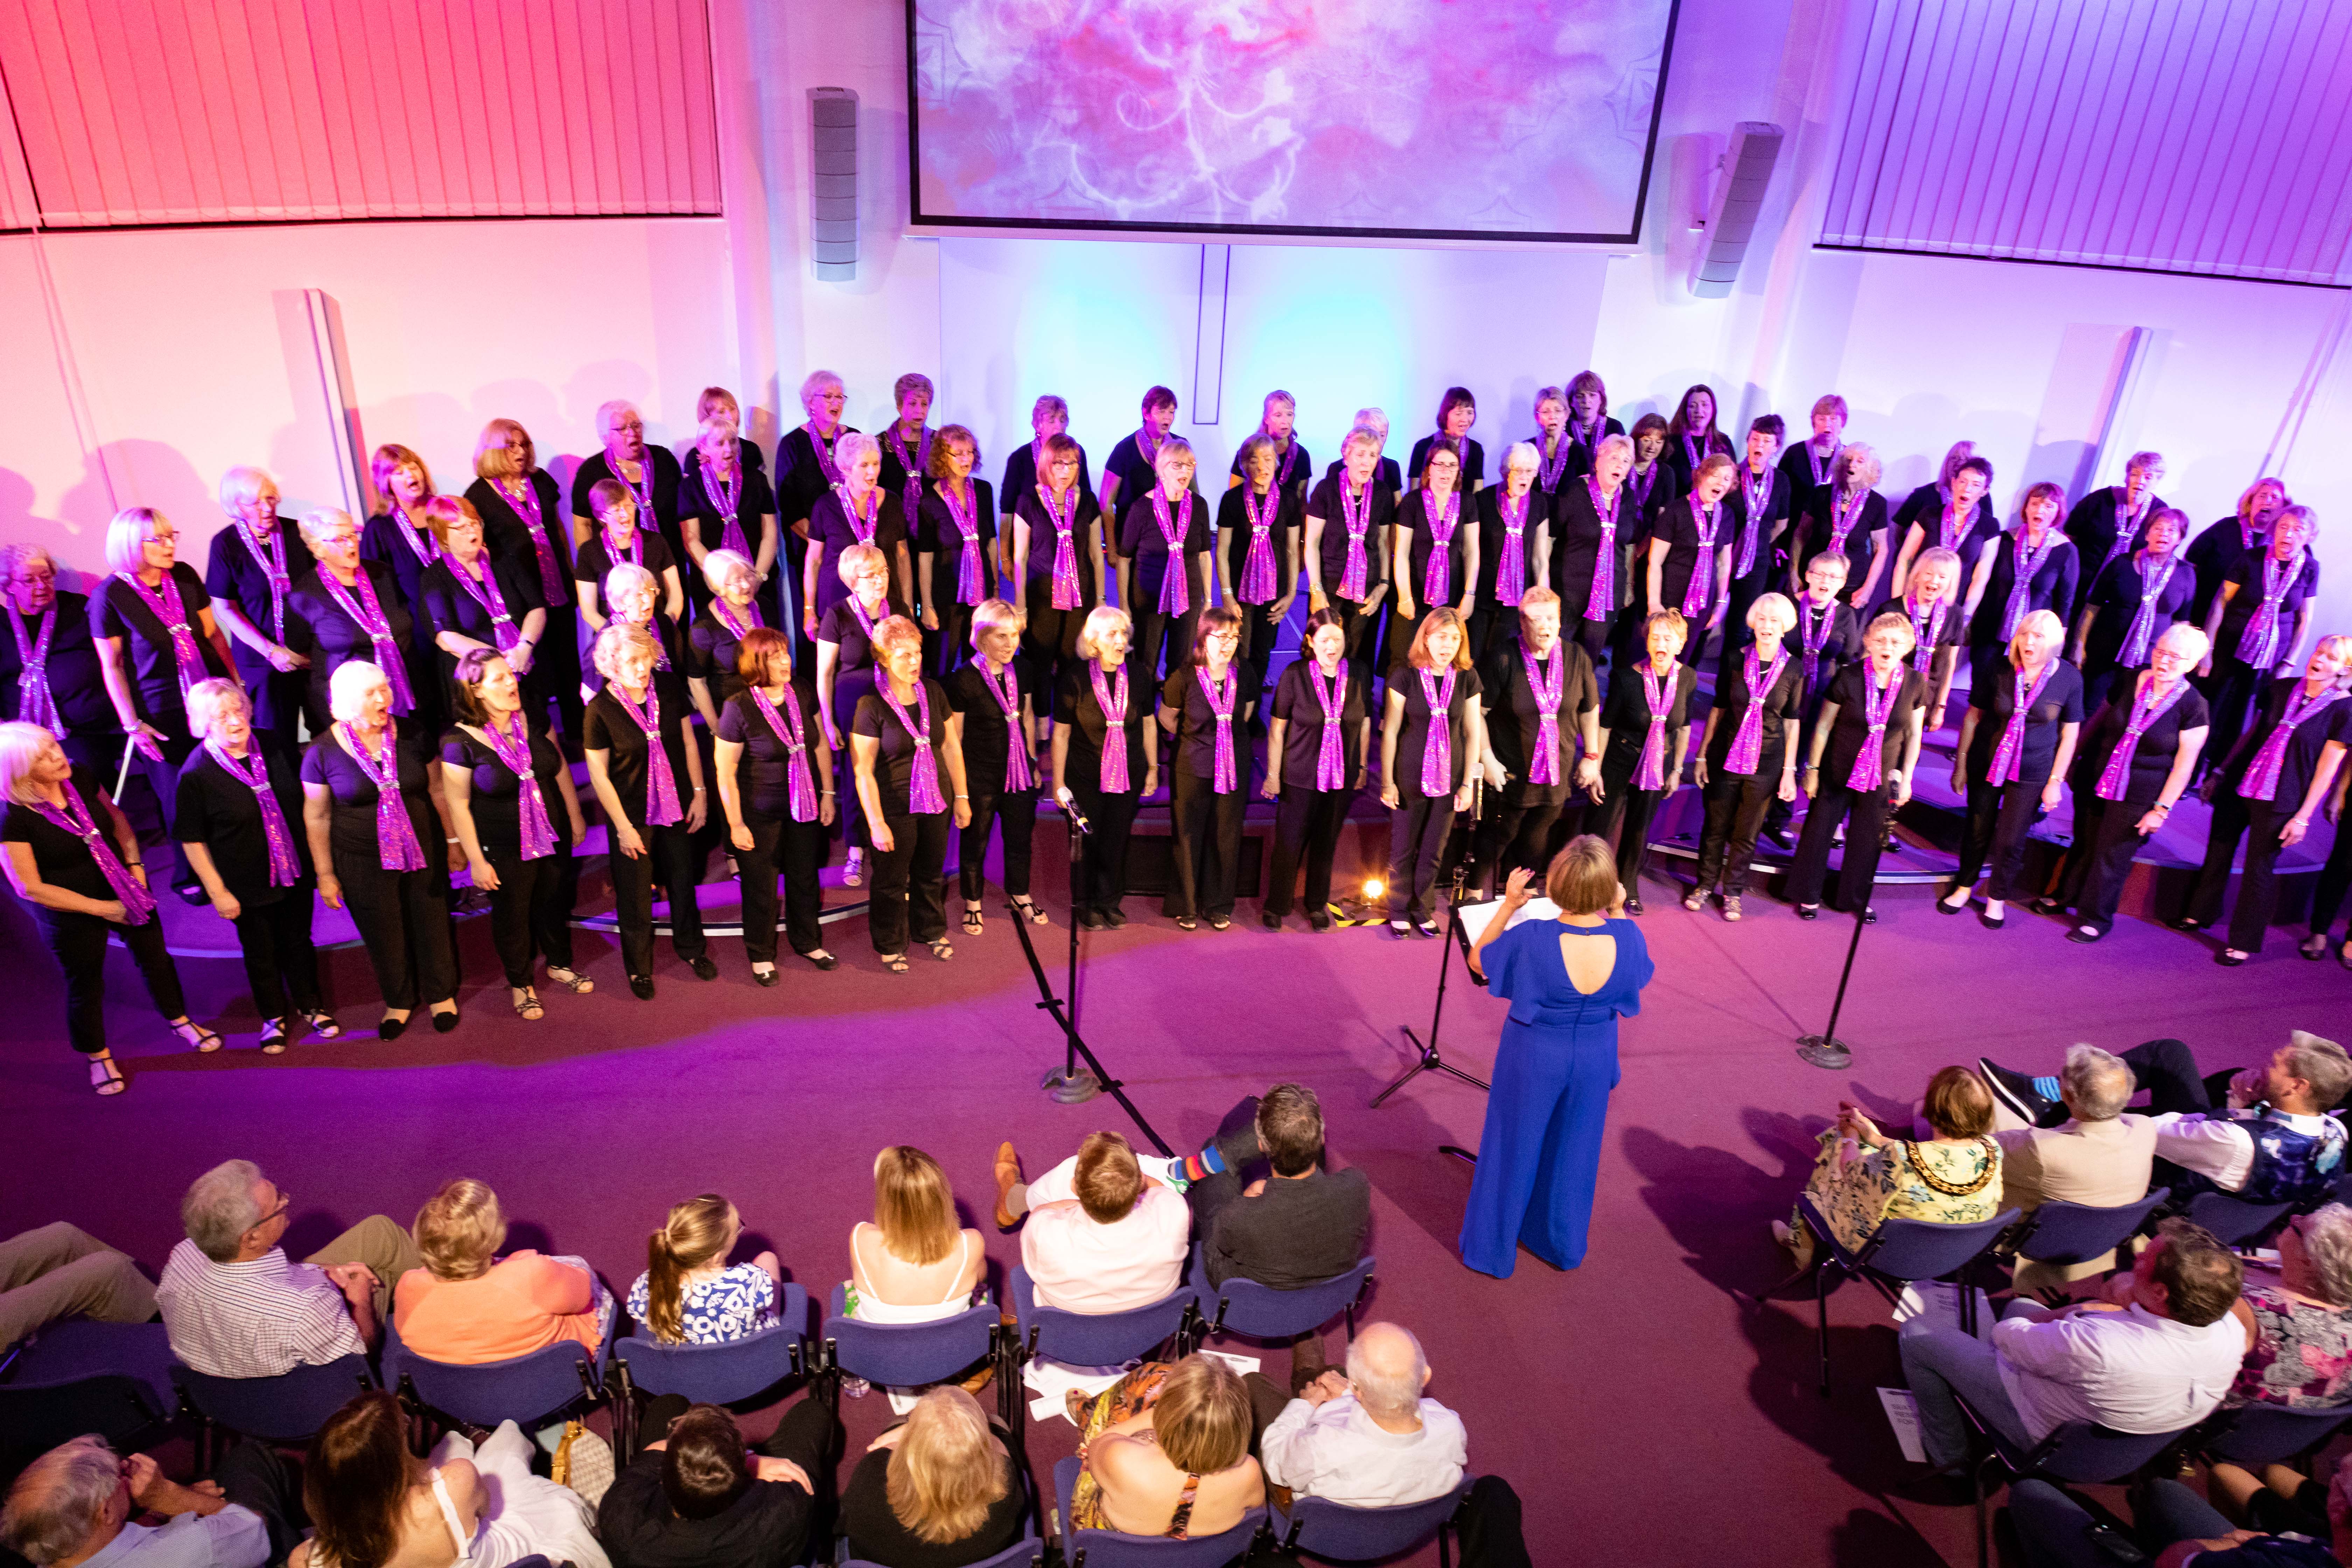 Choir’s Birthday Concert Raises Charity Funds